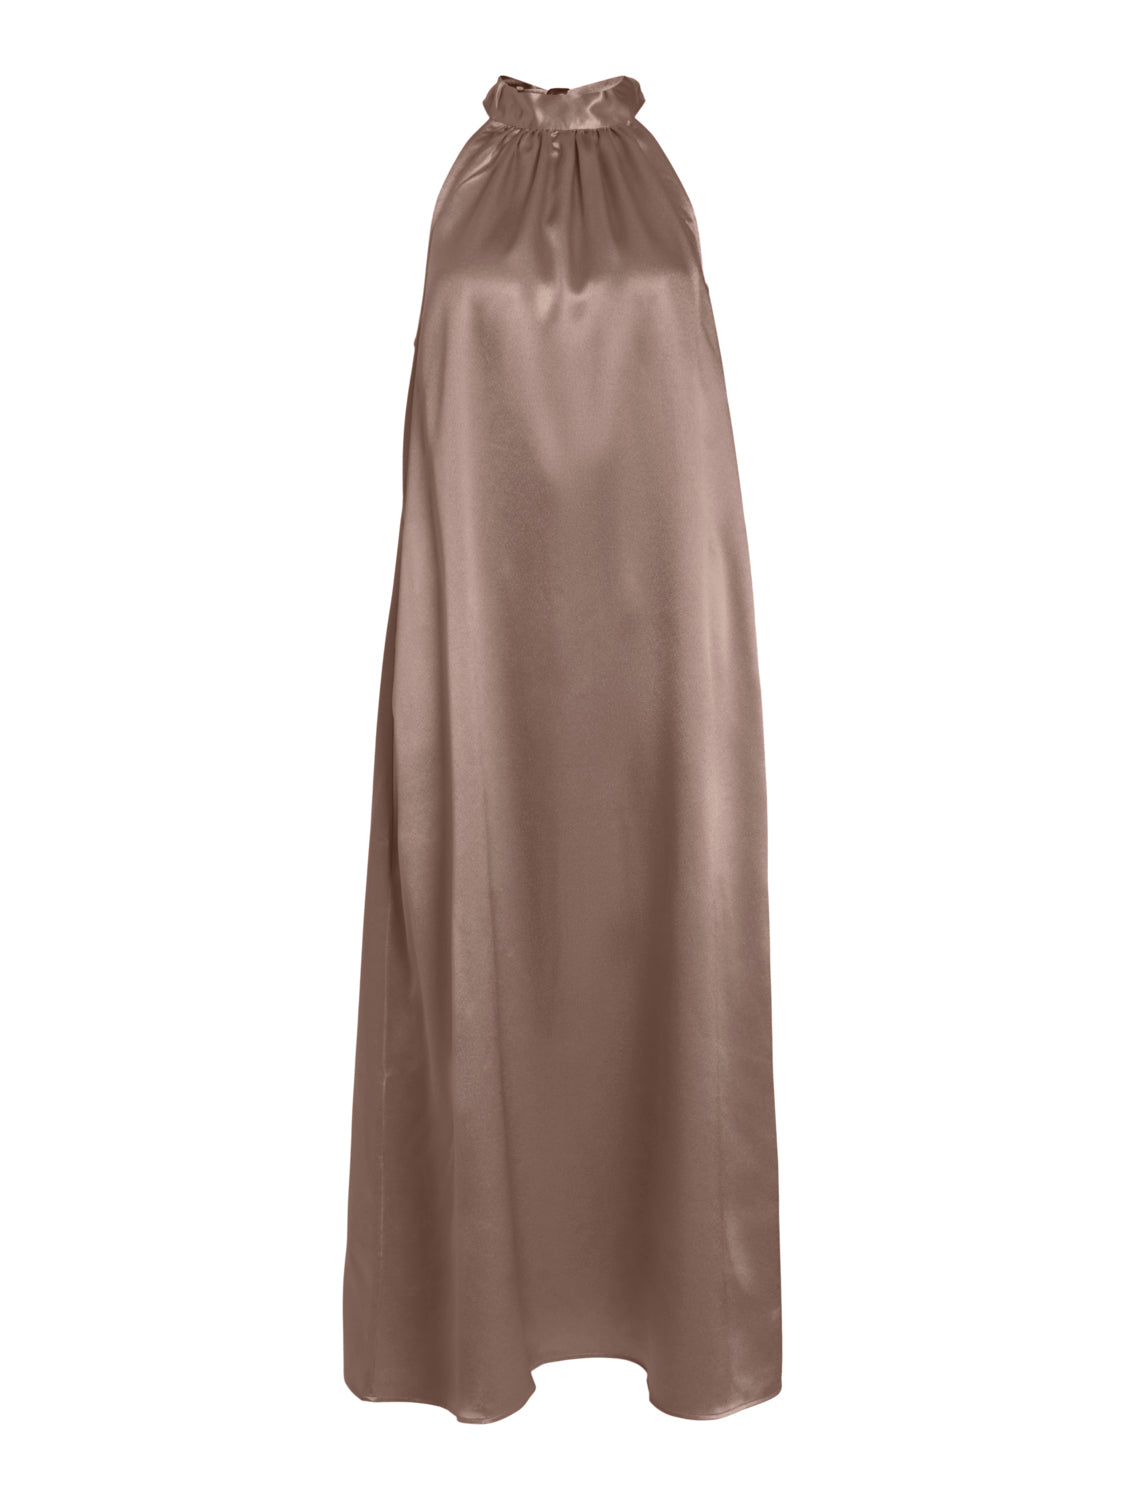 VISITTAS Dress - Brown Lentil